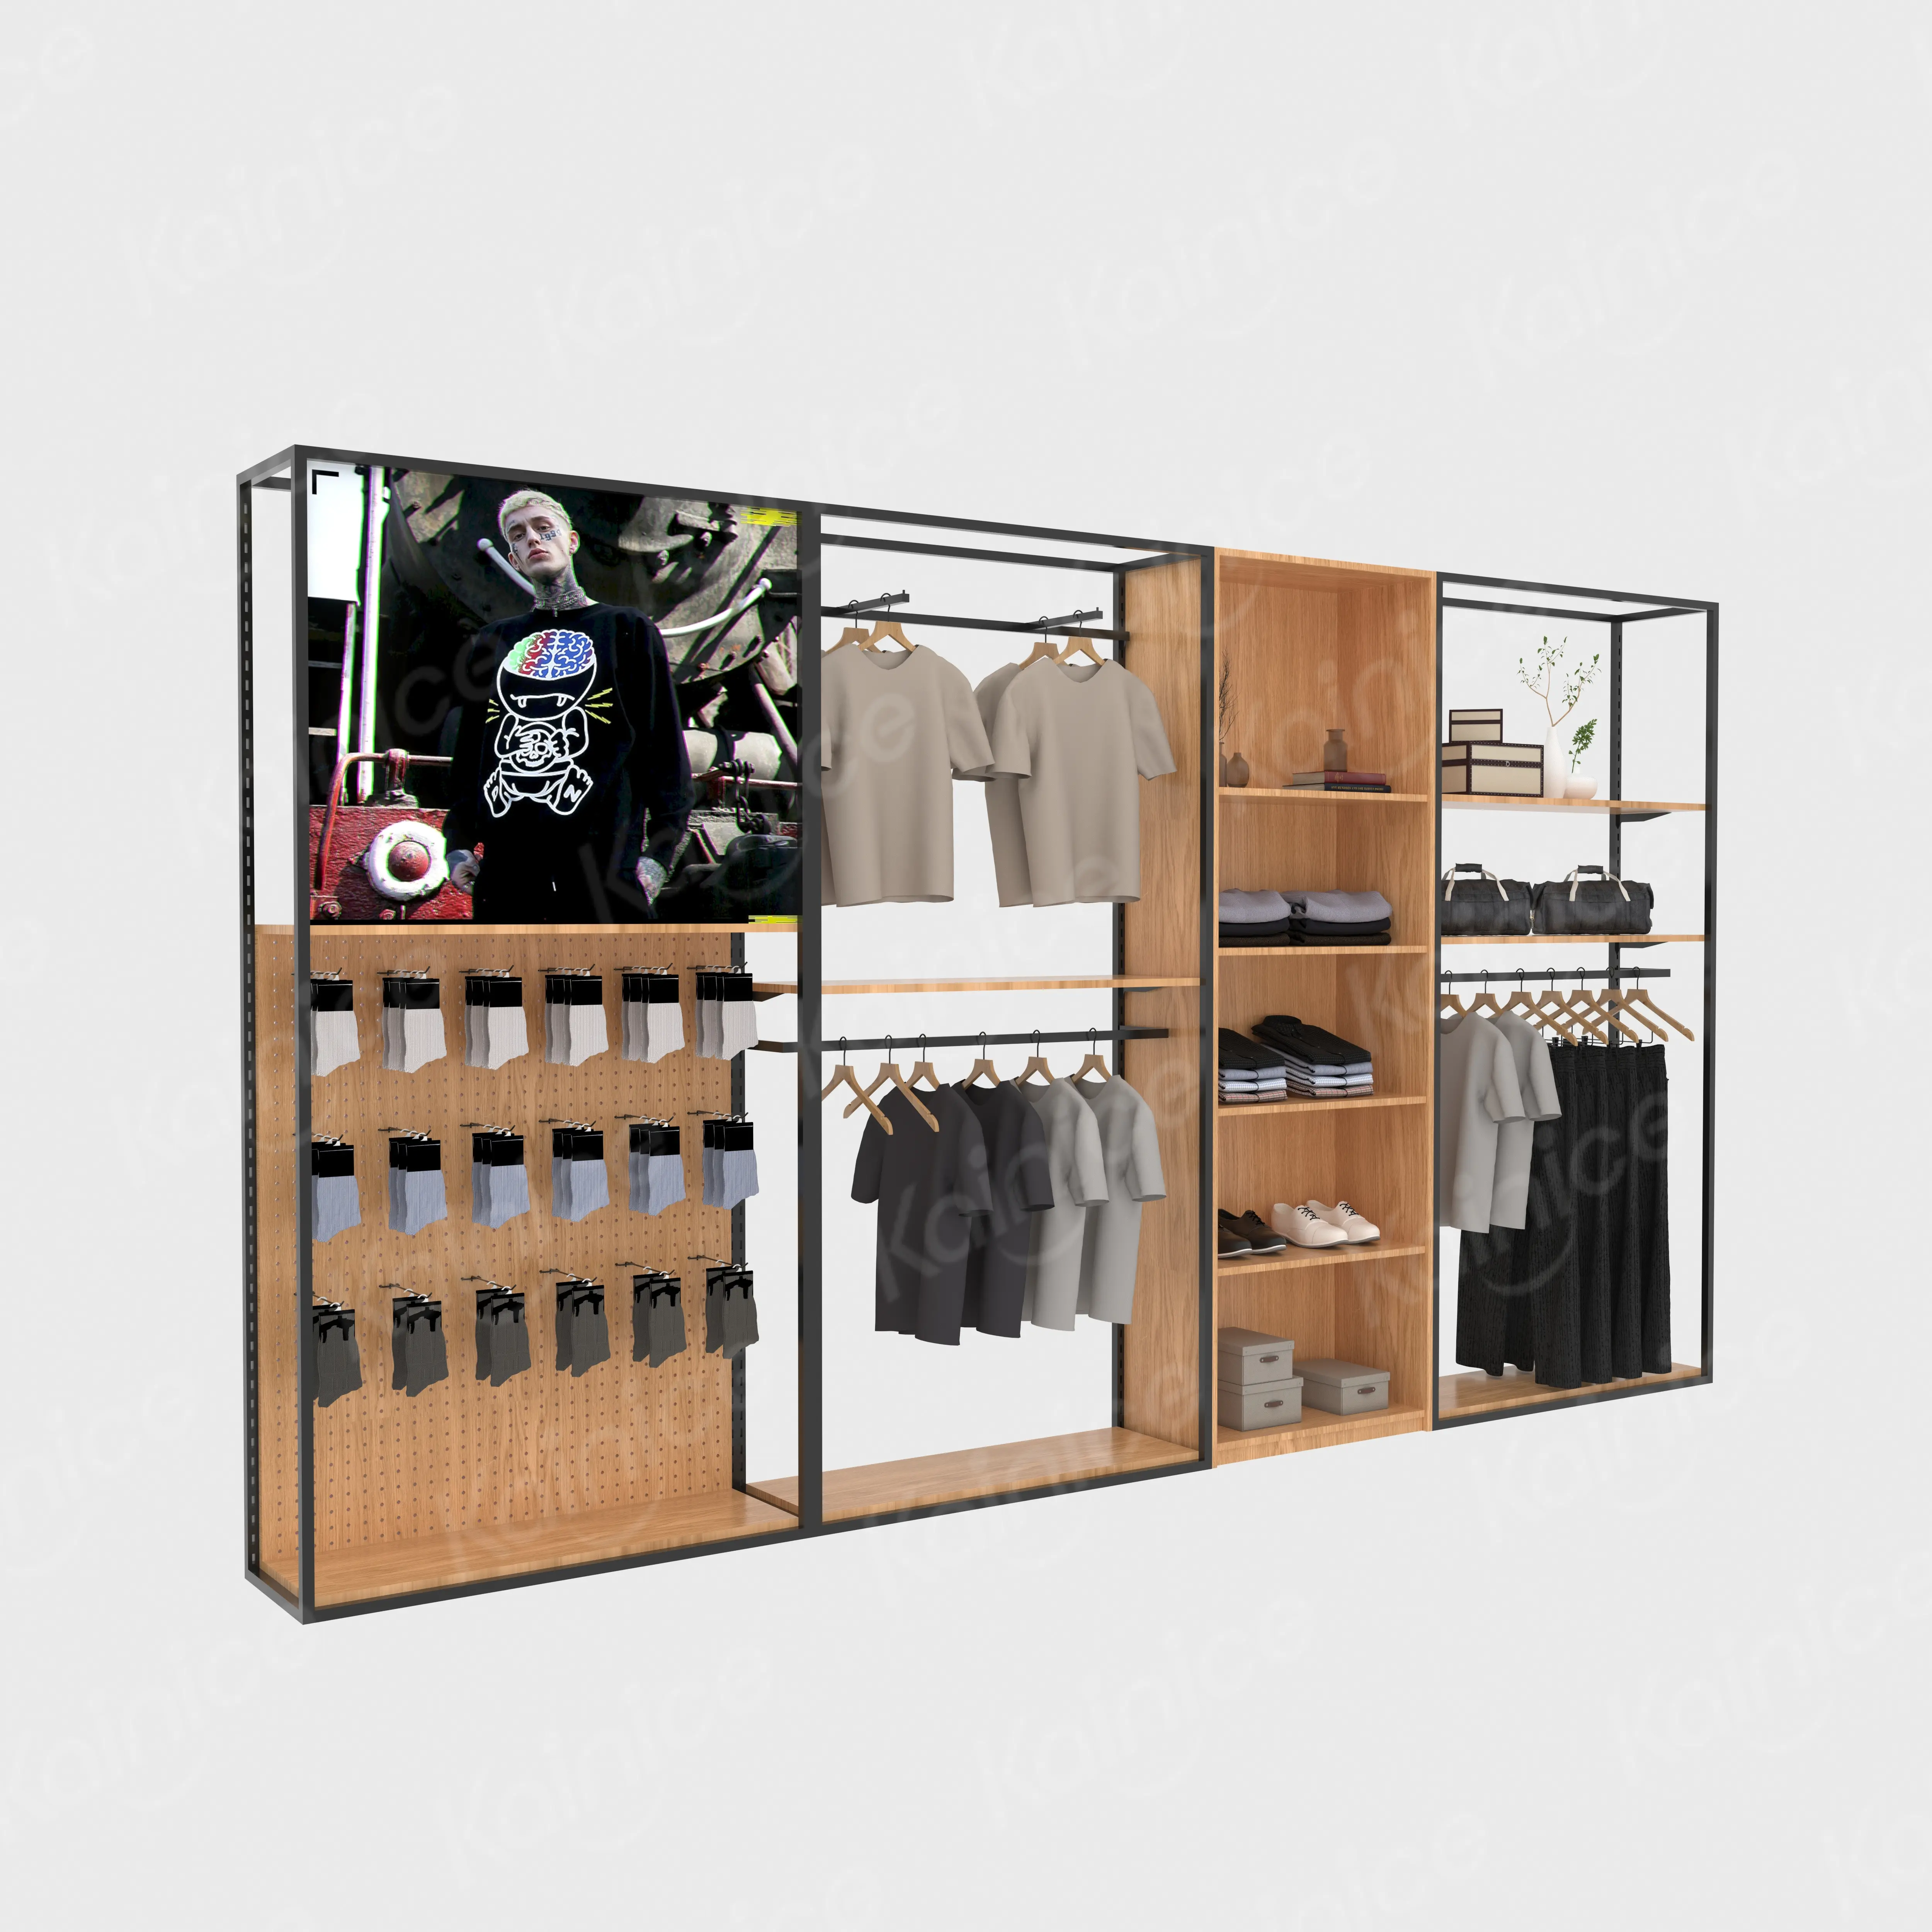 Estante de exhibición de ropa bonita de metal Kainice para tienda de ropa boutique de madera accesorios y estantes soporte de exhibición de ropa